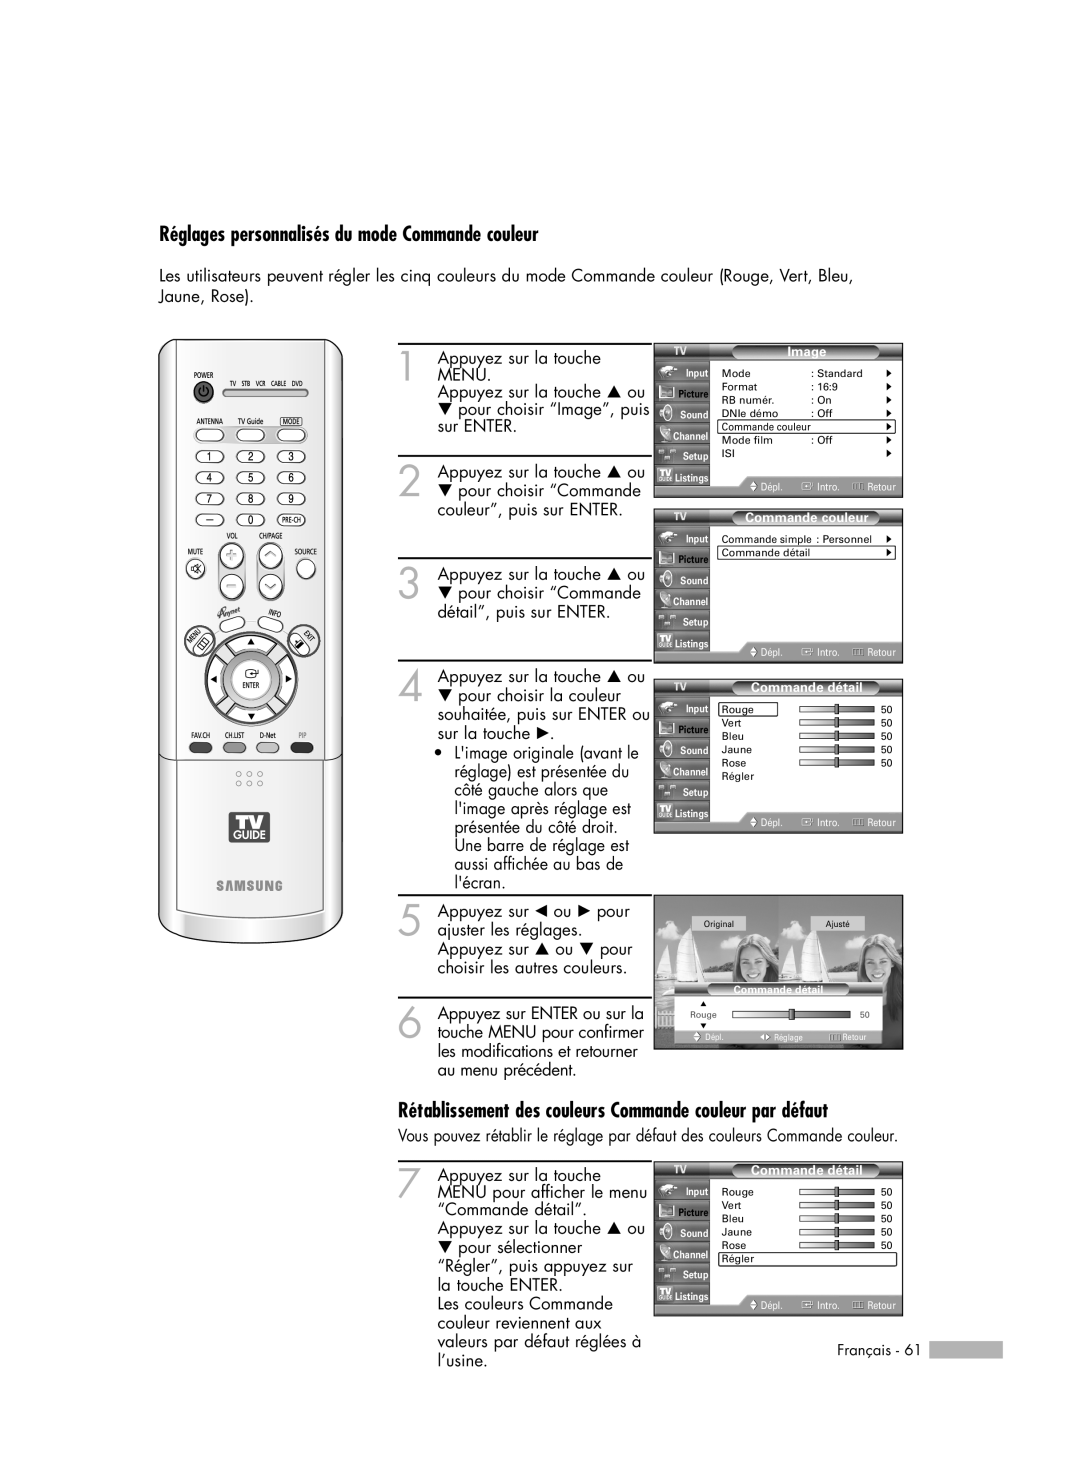 Samsung HL-R5078W Réglages personnalisés du mode Commande couleur, Rétablissement des couleurs Commande couleur par défaut 